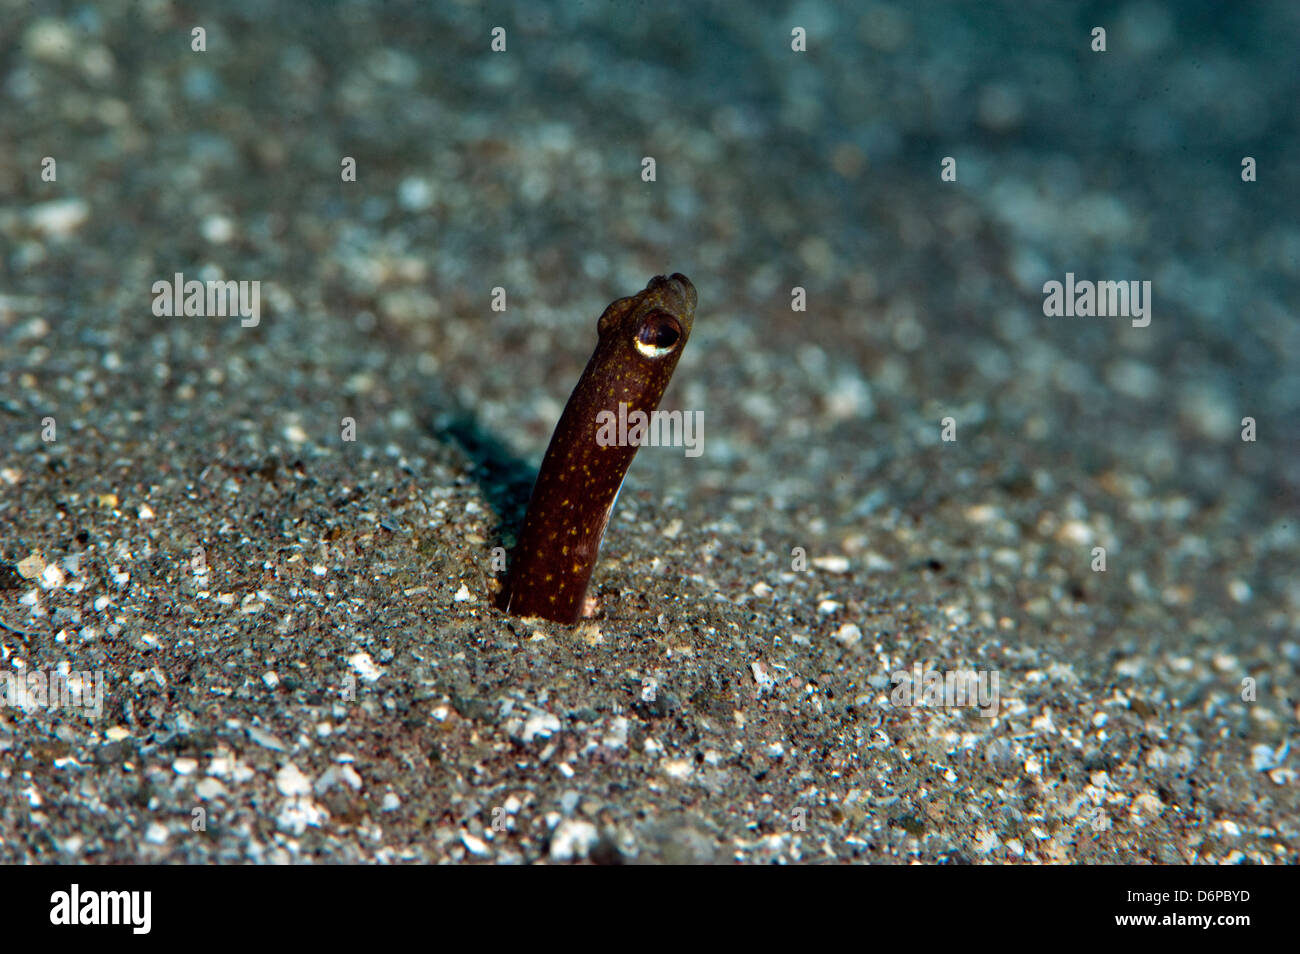 Brown garden eel (Heteroconger halis), Dominica, West Indies, Caribbean, Central America Stock Photo